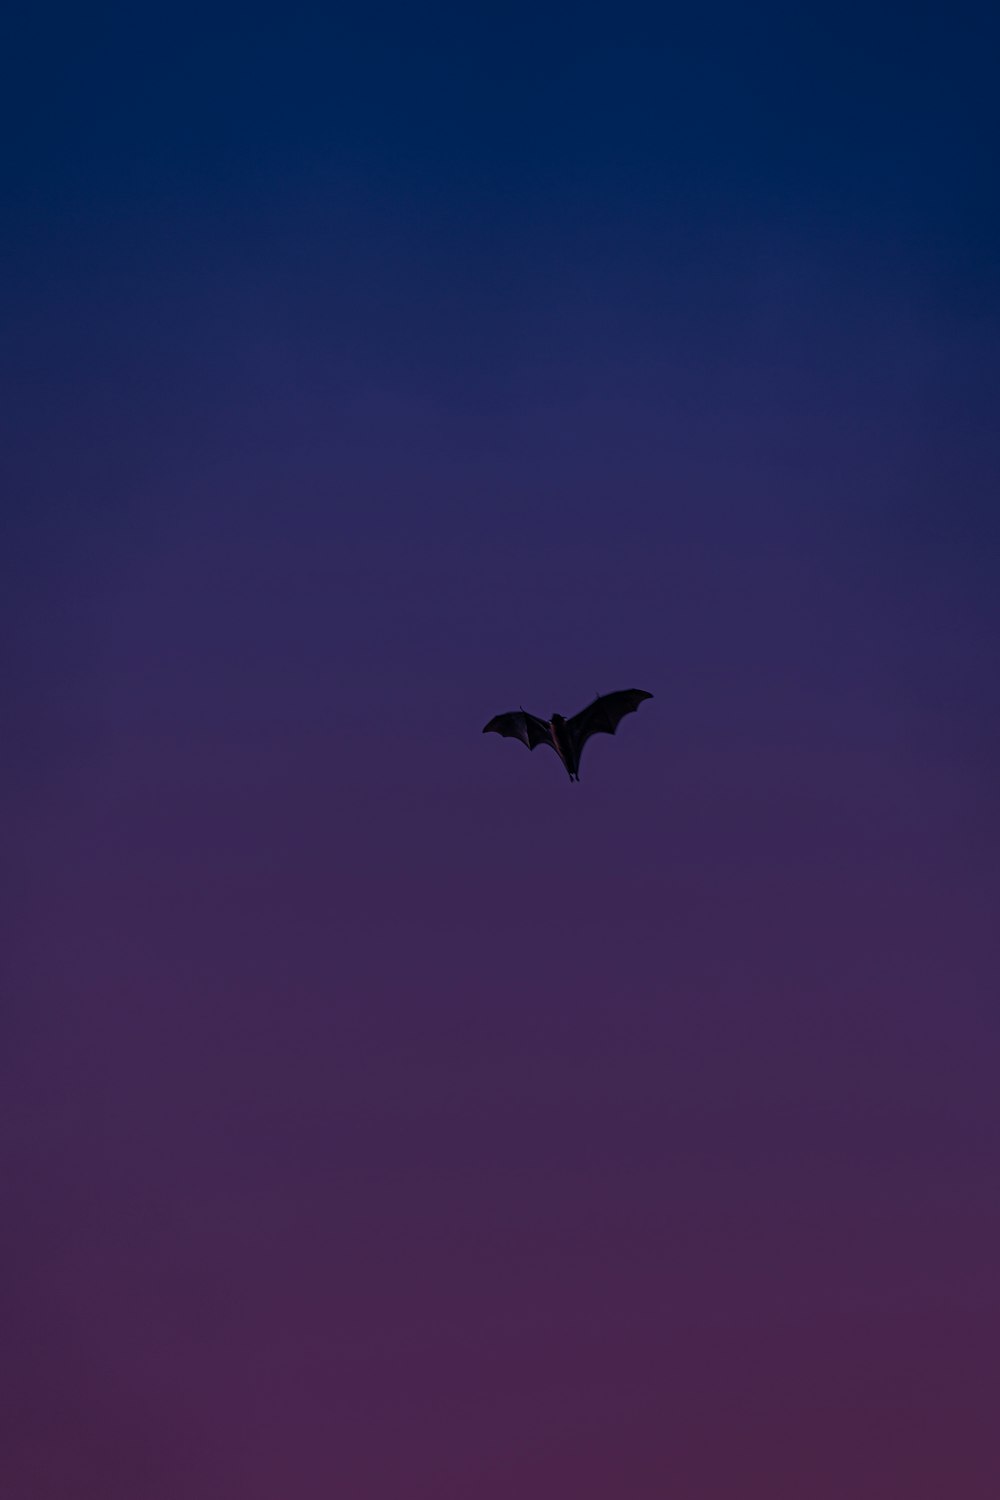 pájaro negro volando en el cielo